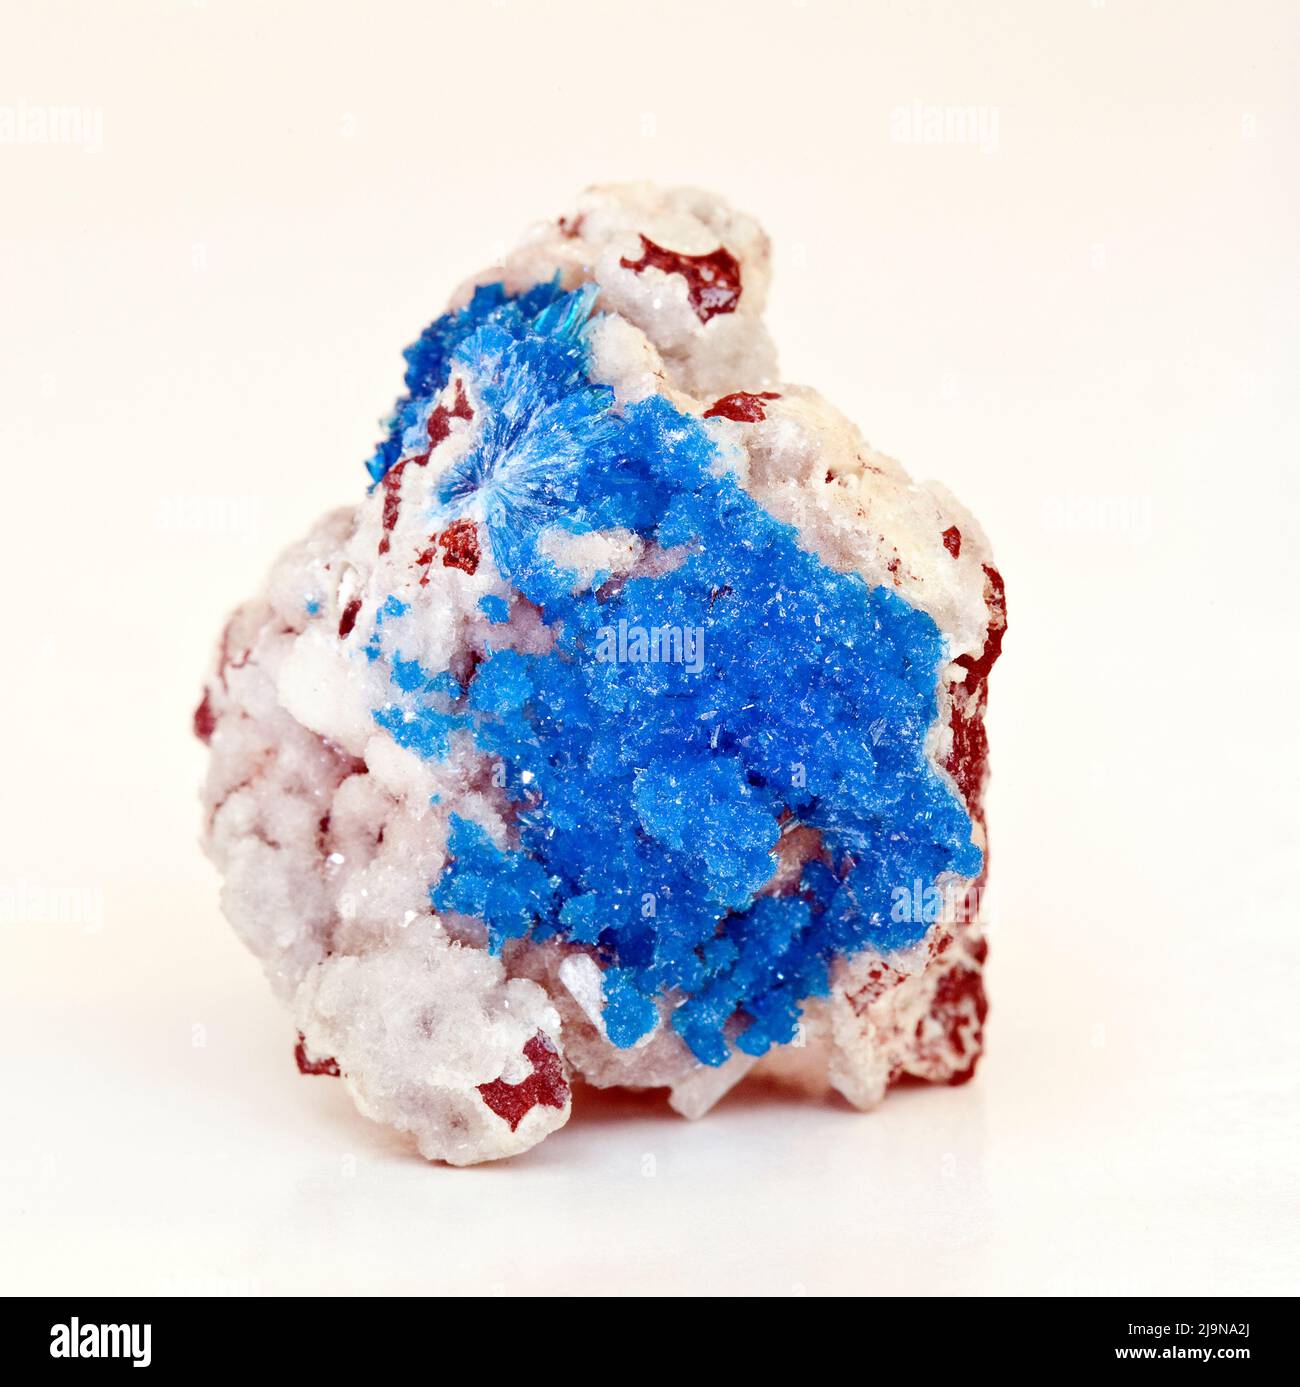 Macro primer plano fotografía en color de una ' Cavansita ' una piedra preciosa semi cristal usada en la terapia curativa del cristal Foto de stock